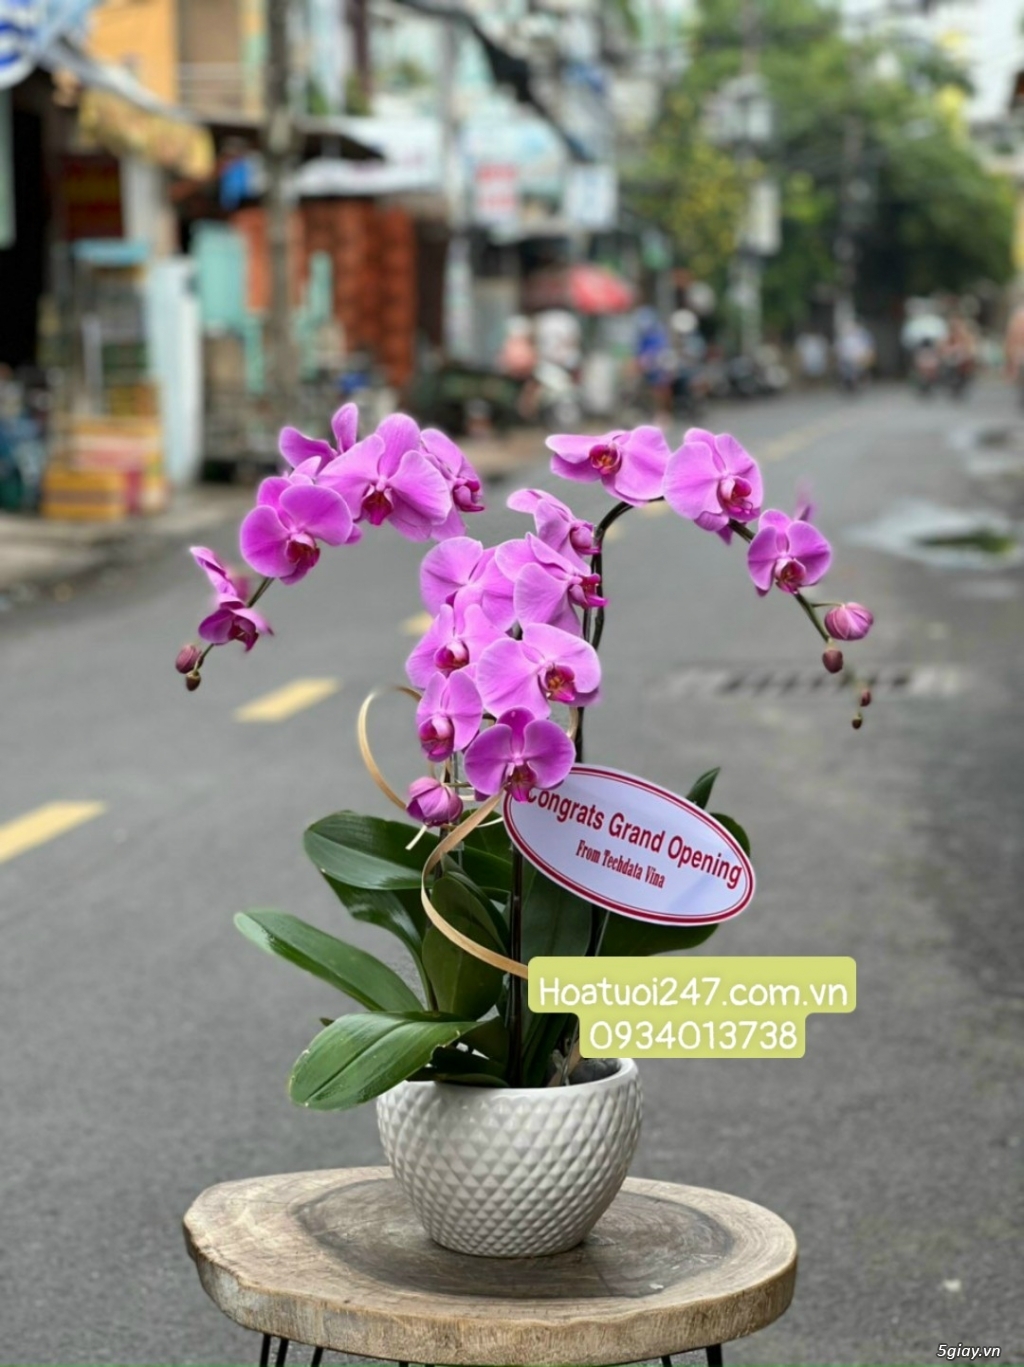 Vườn hoa tươi Lan Hồ Điệp 247 ấn tượng giữa lòng Sài Gòn - 4